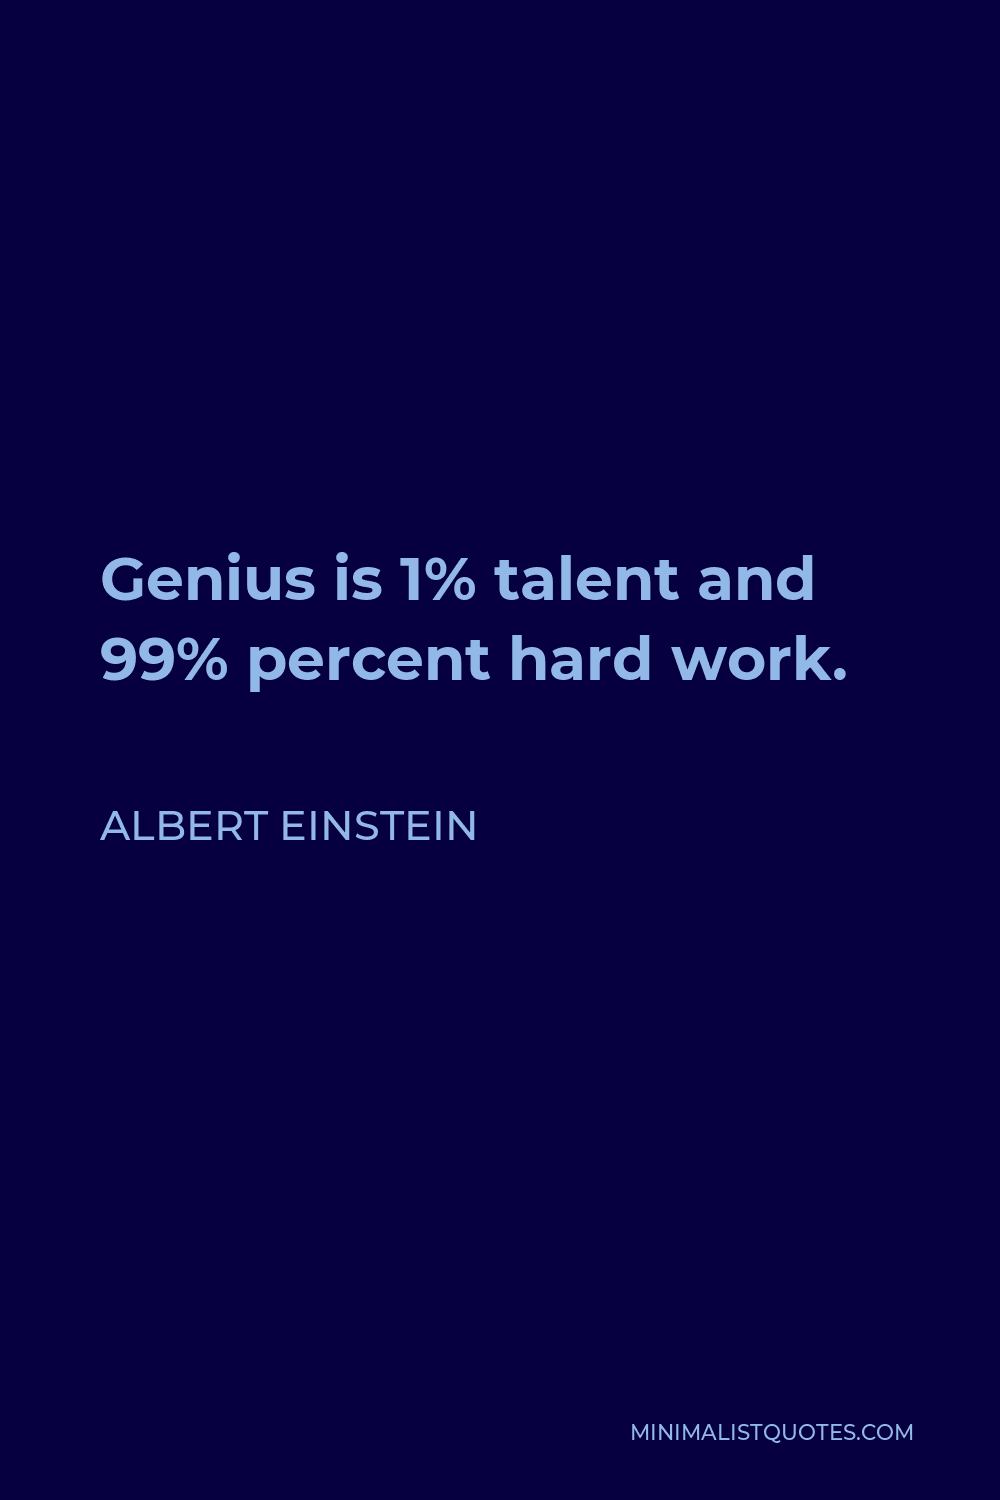 Albert Einstein Quote - Genius is 1% talent and 99% percent hard work.